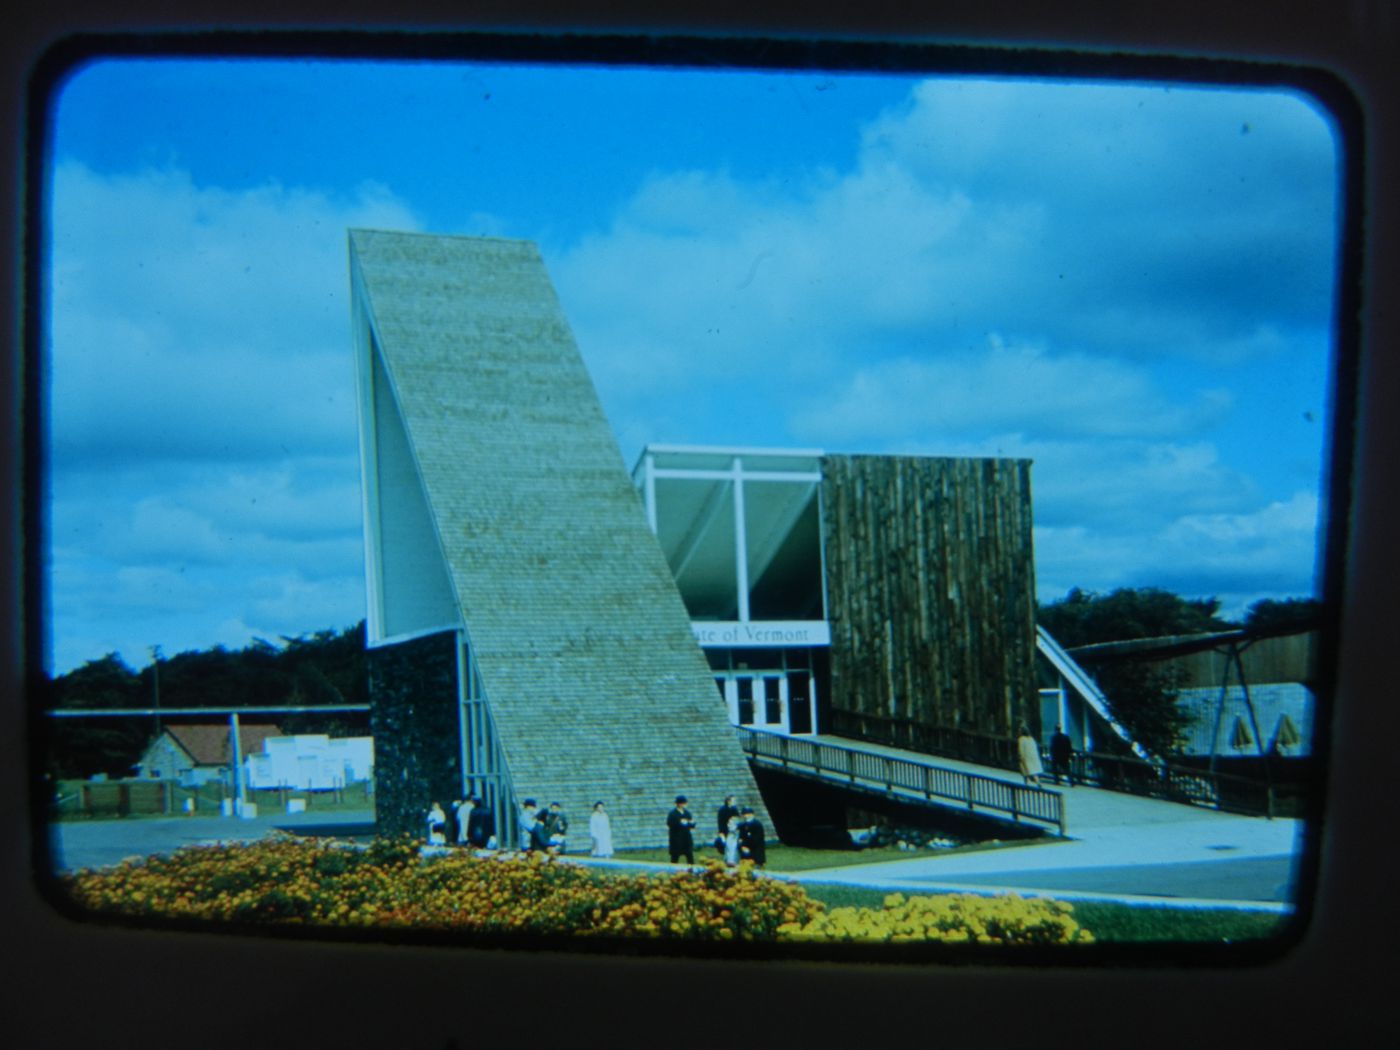 View of the Vermont's Pavilion, Expo 67, Montréal, Québec